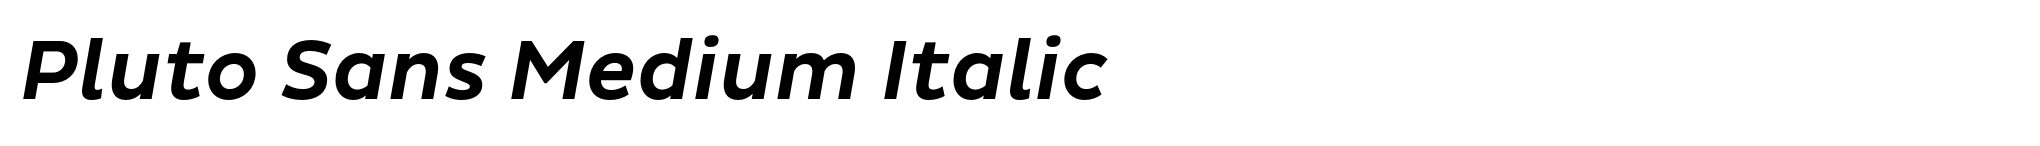 Pluto Sans Medium Italic image